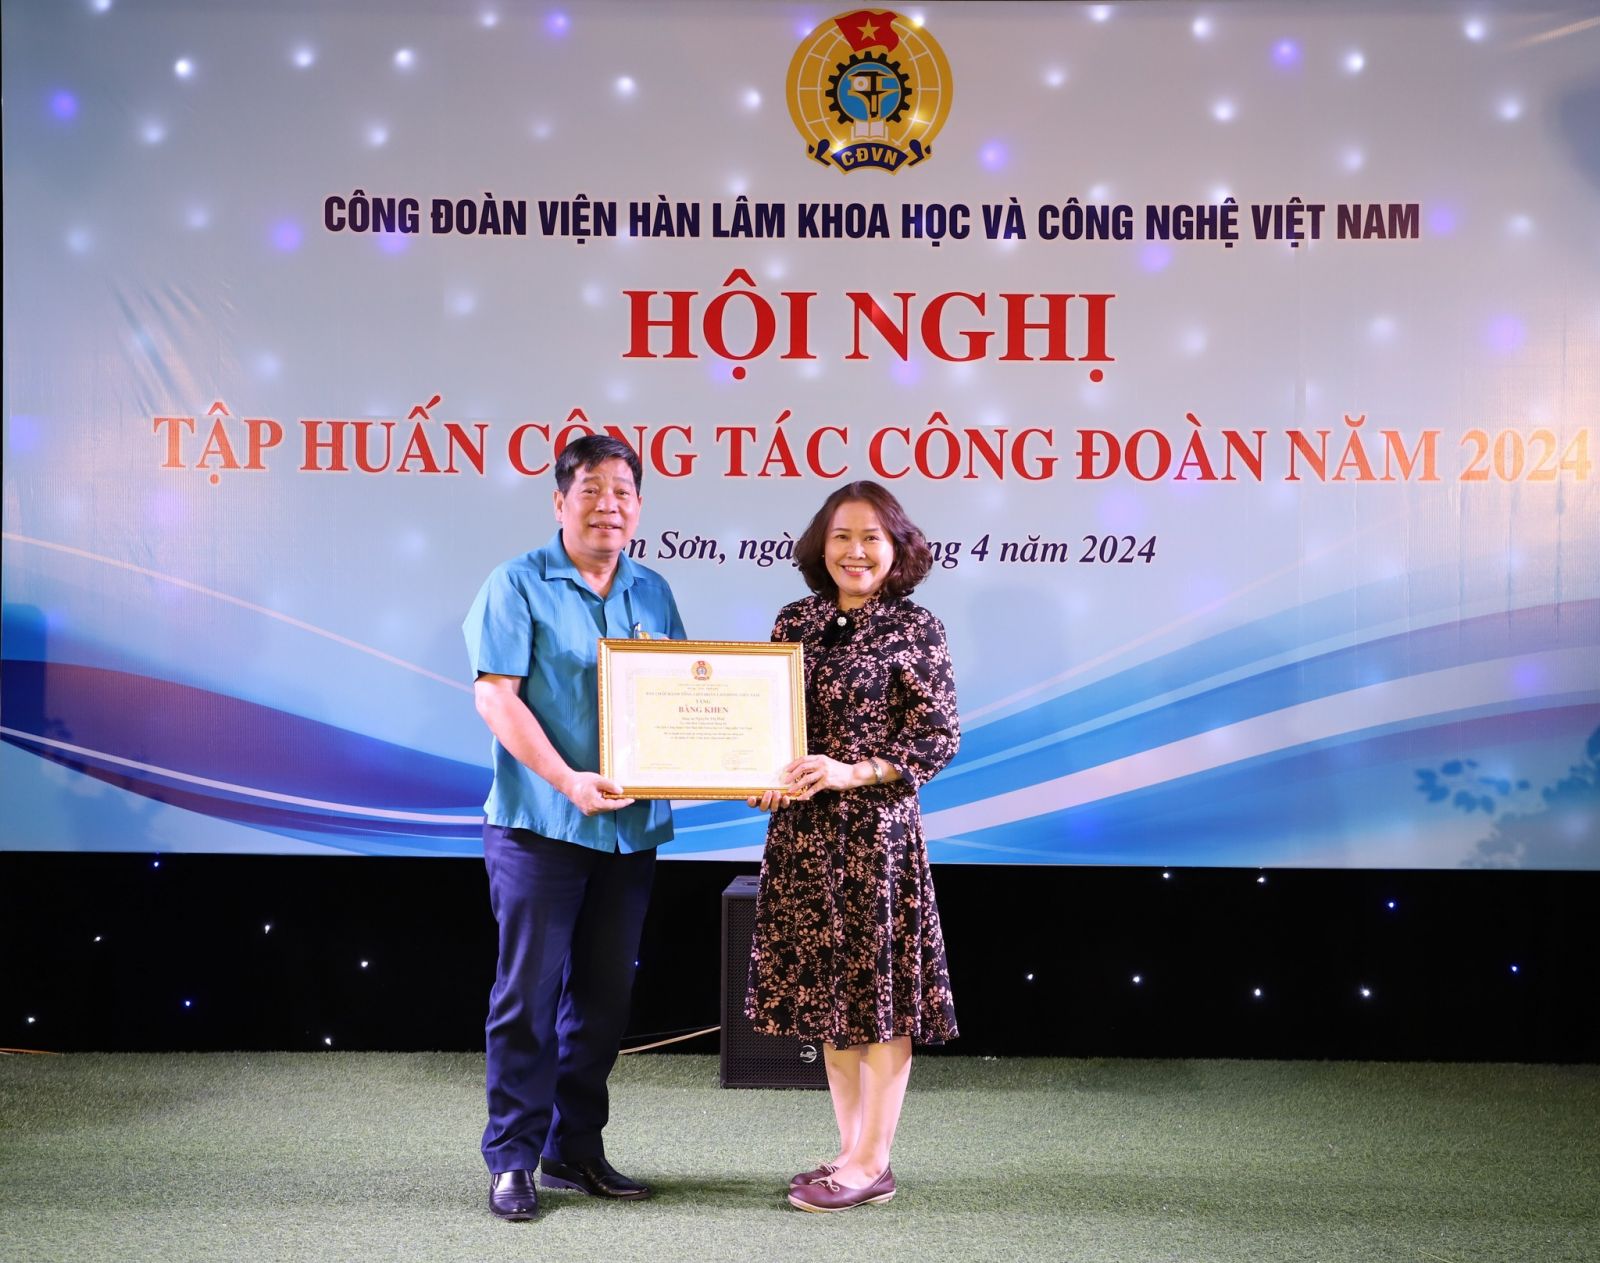 Tặng Bằng khen của Tổng Liên đoàn Lao động Việt Nam cho đồng chí Nguyễn Thị Huệ